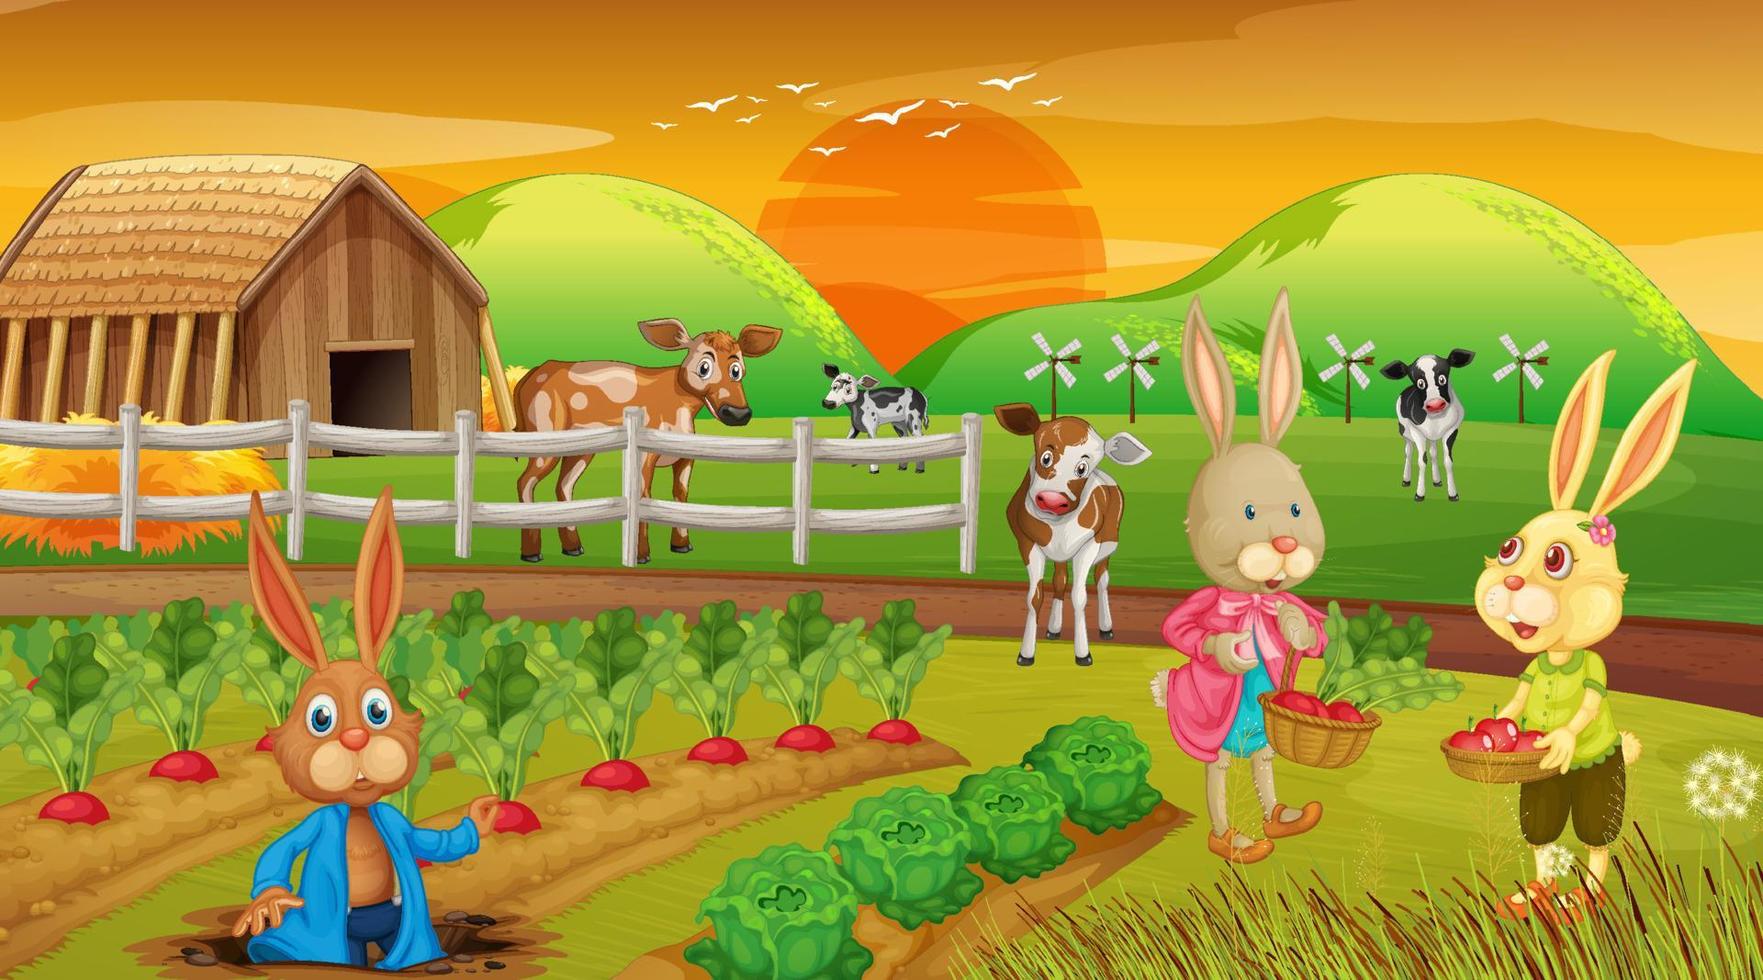 boerderij bij zonsondergang tijdscène met konijnenfamilie en boerderijdieren vector